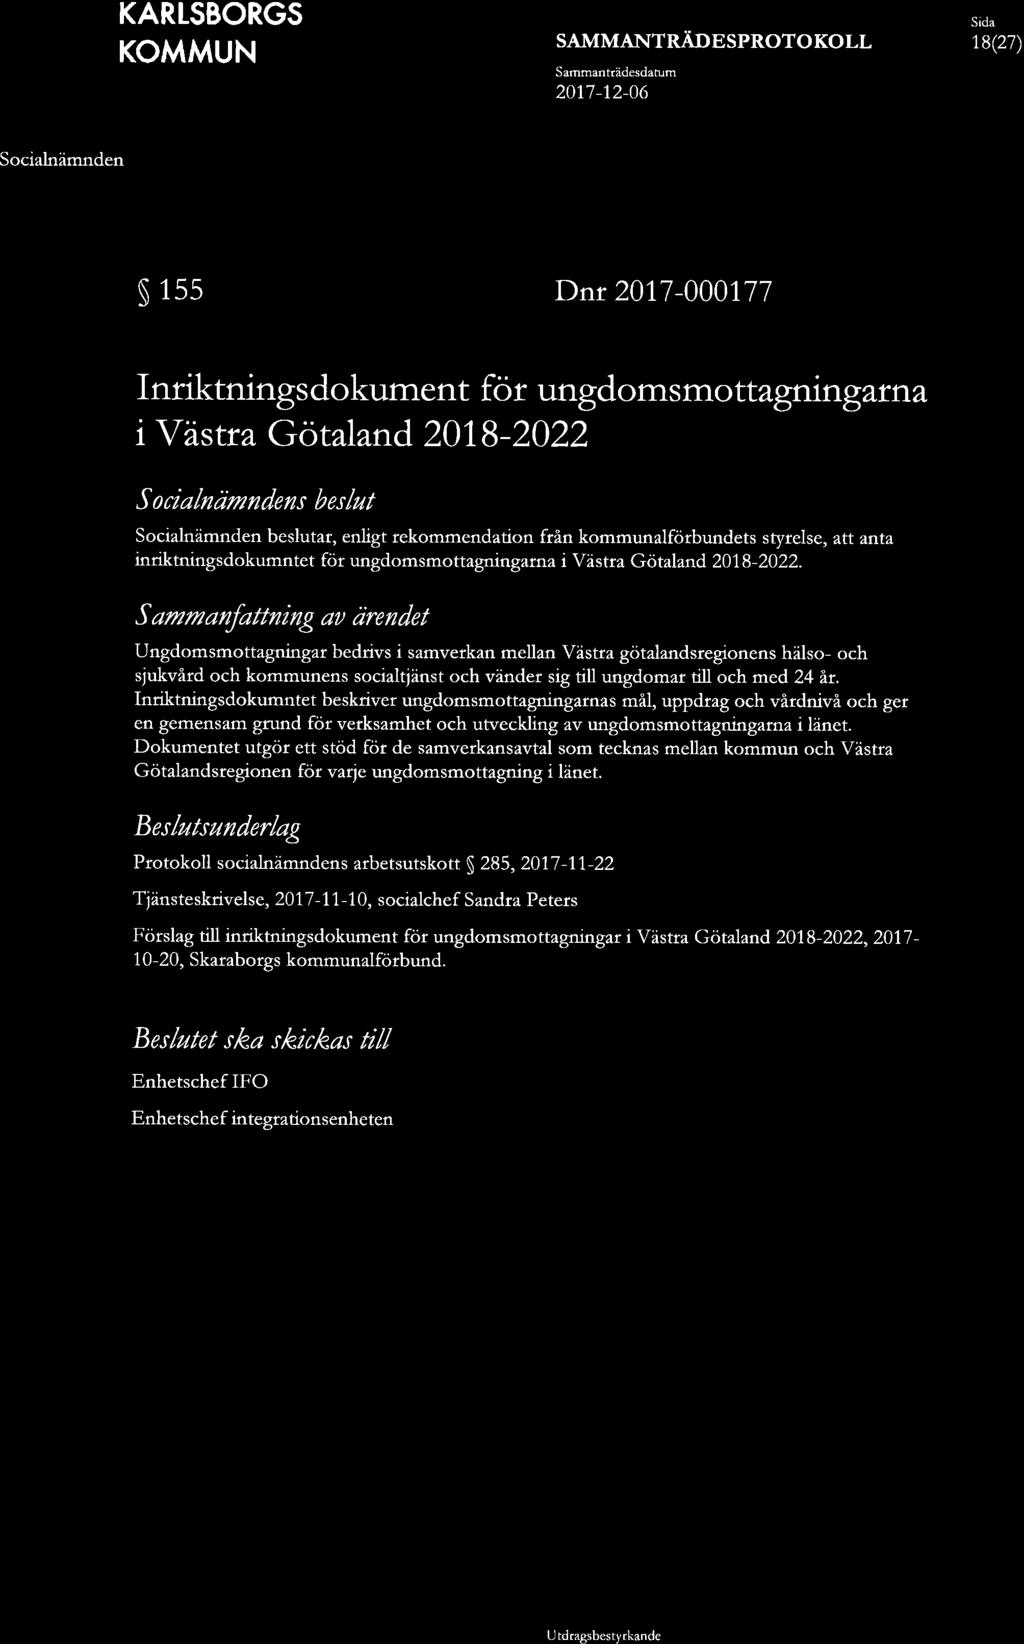 18(27) 155 Dnr 2017-000177 Inriktningsdokument för ungdomsmottagningarna i Västra Götaland 2018-2022 s beslut beslutar, enligt rekommendation från kommunalförbundets styrelse, att anta